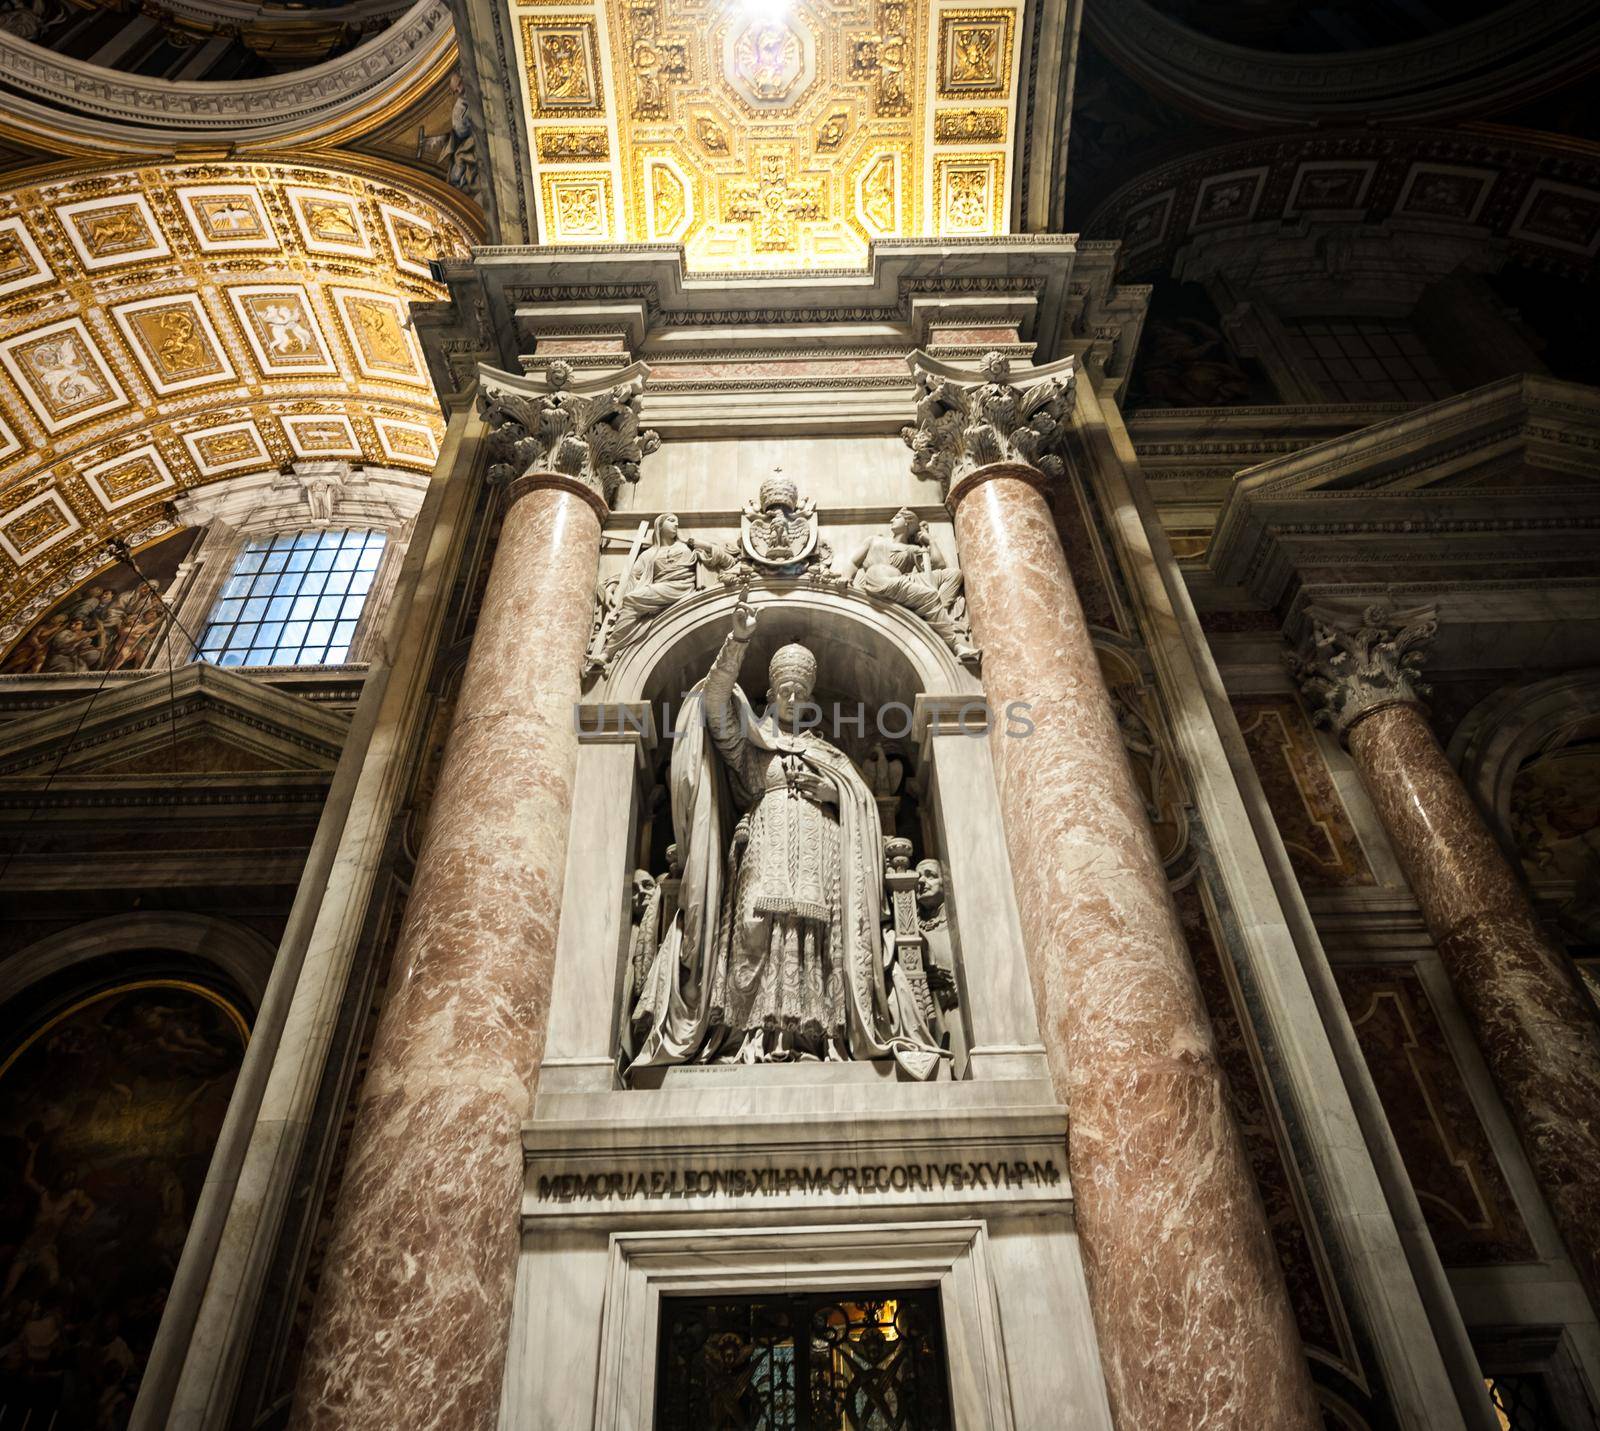 St. Peter's Basilica in Vatican inside by GekaSkr